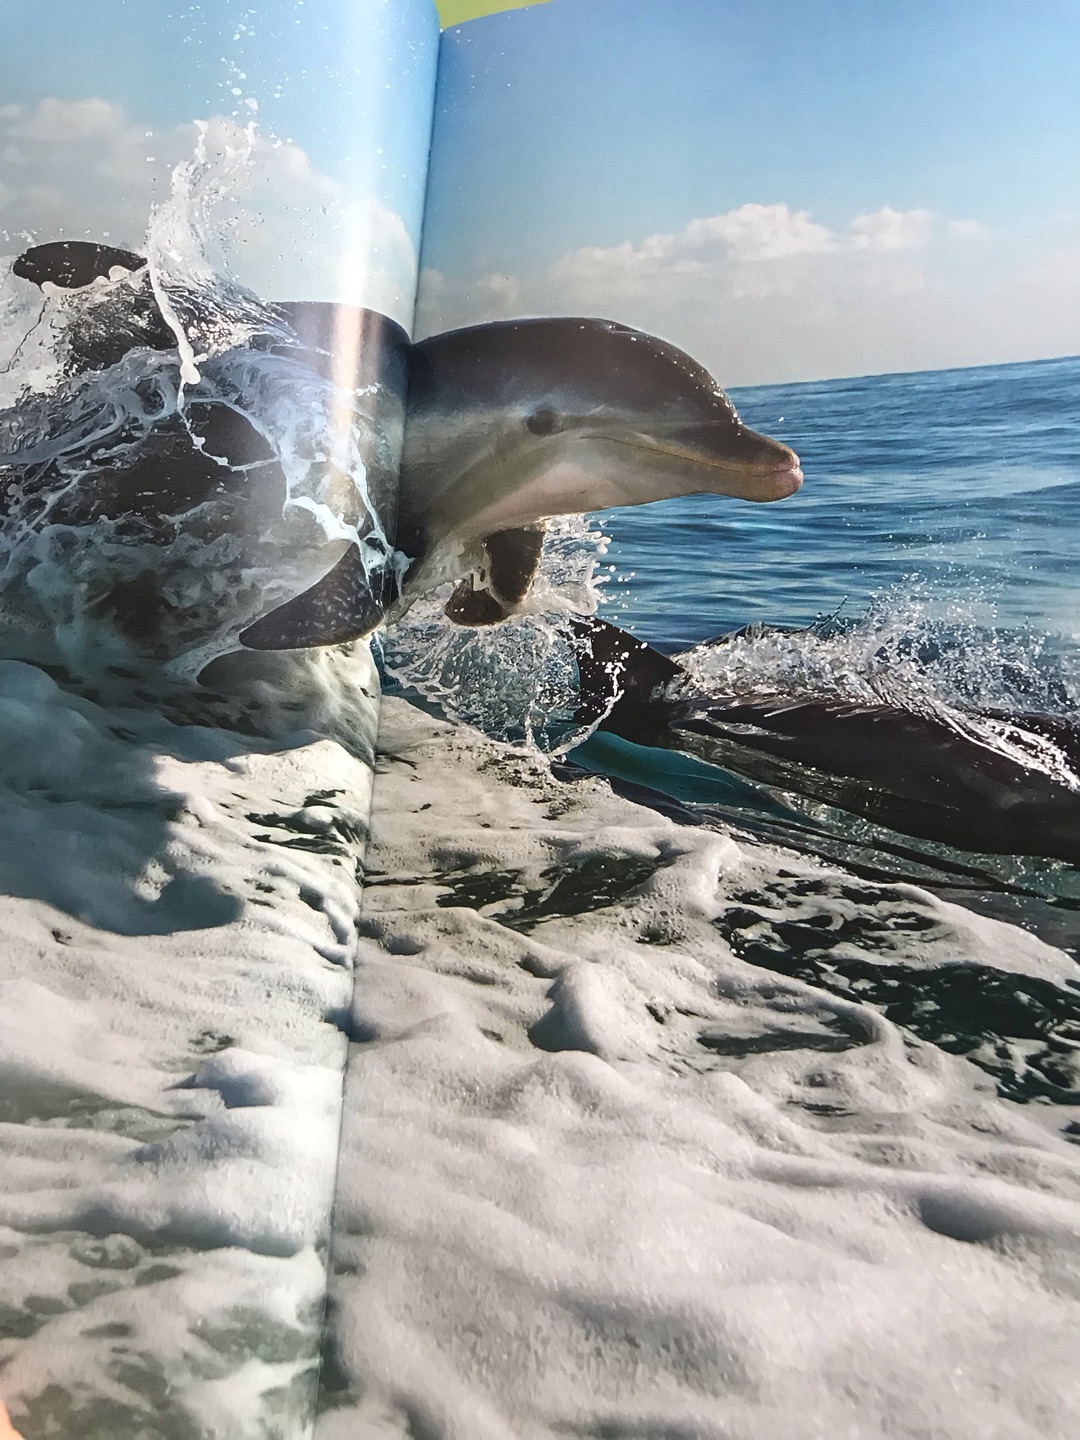 看过BBC的这部纪录片，当时就觉得特别的震撼，大海如此的美丽，现在又出了这本书，可以再重温美丽的海洋和神奇的海洋动物。